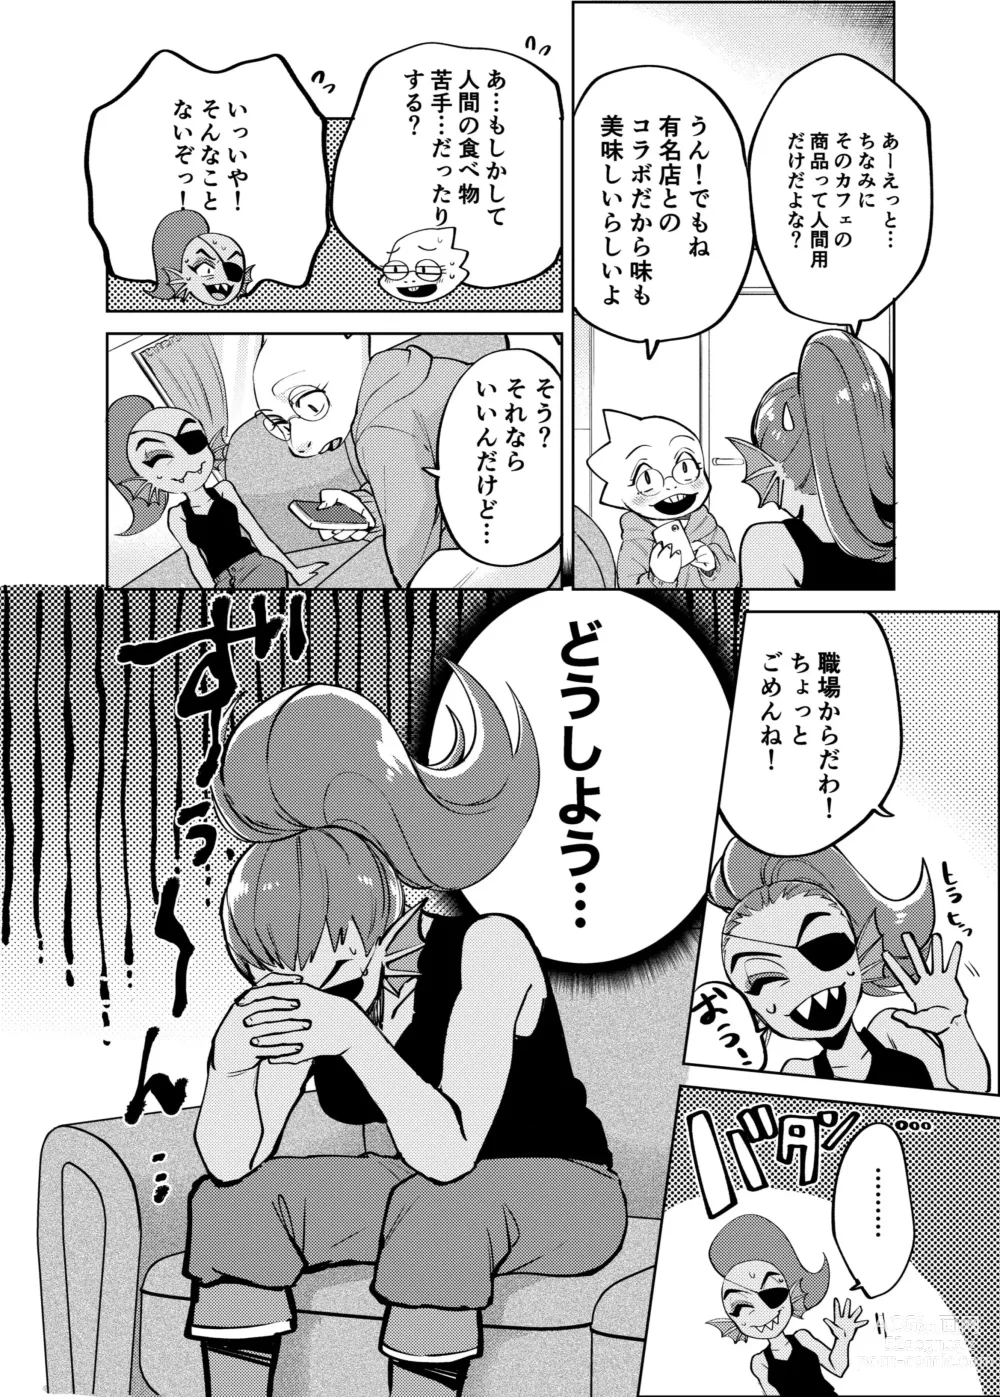 Page 3 of doujinshi Watashi wa Zettai ni Make wa Shinaitsu!!